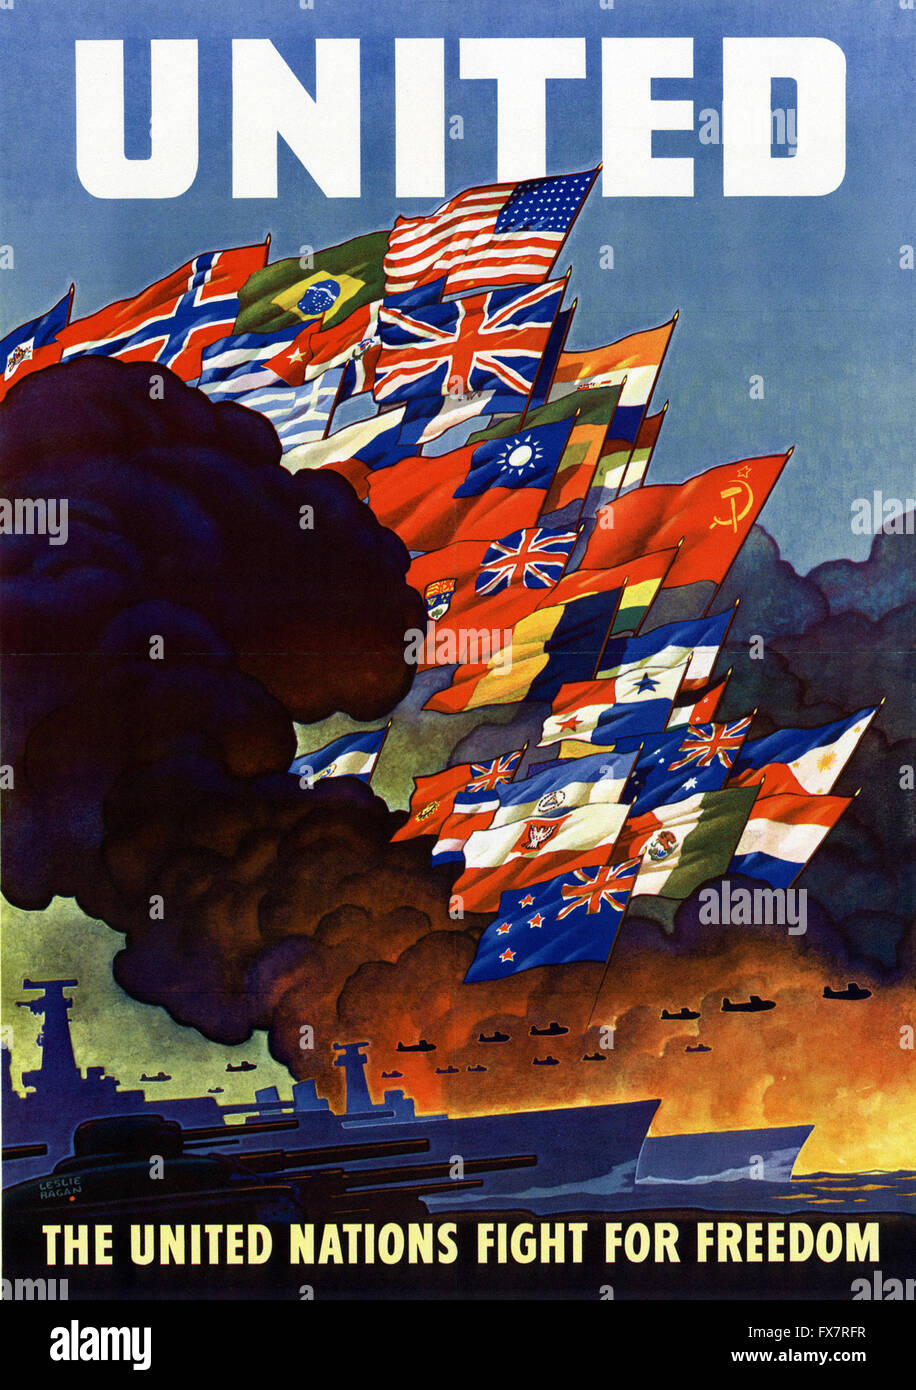 die Vereinten Nationen kämpfen für die Freiheit - Weltkrieg - US-Propaganda Poster Stockfoto